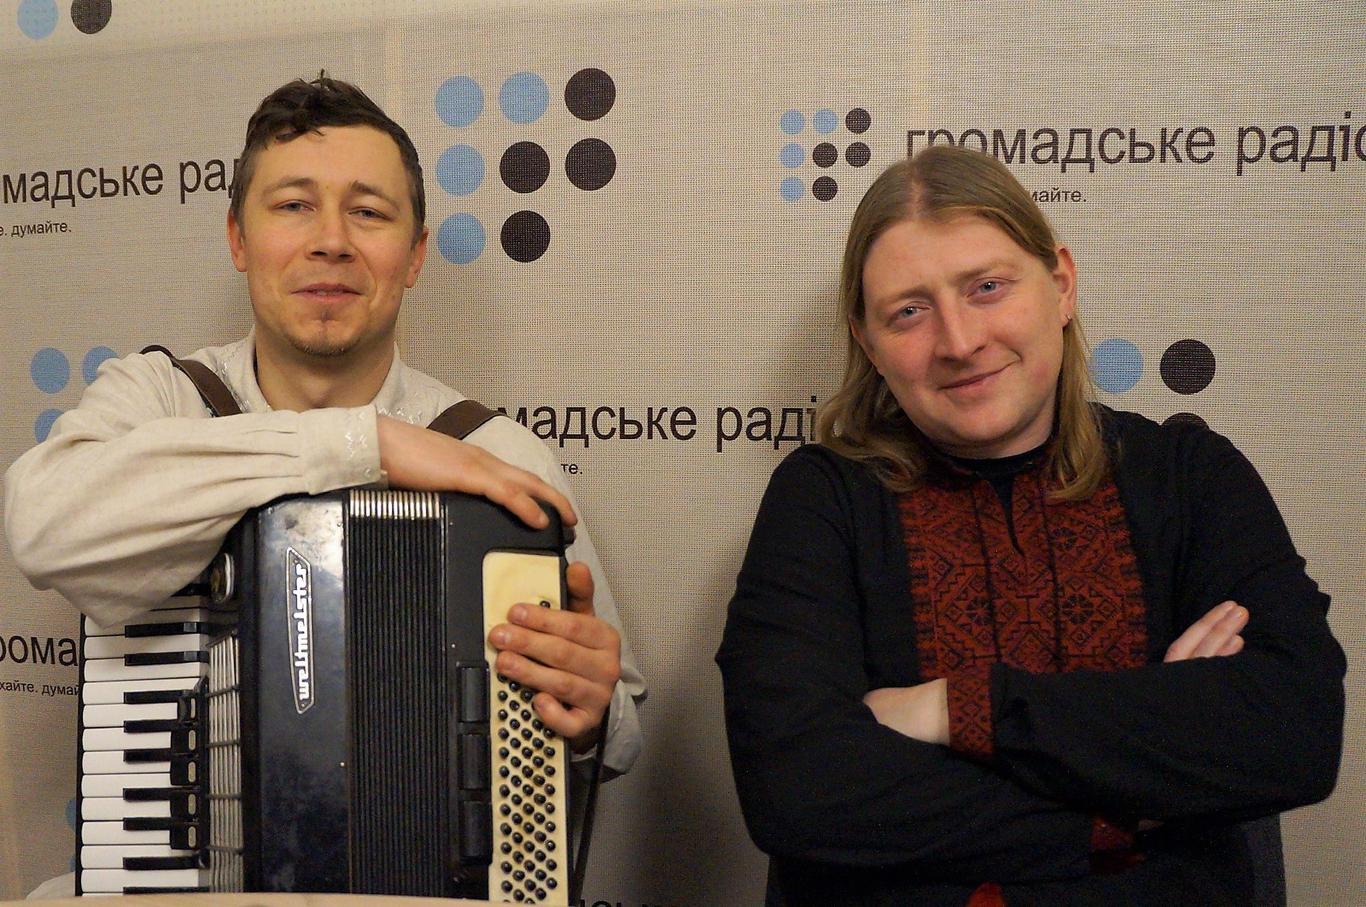 Патріотизм по-одеськи: як гурт «Друже музико» співає про любов до України